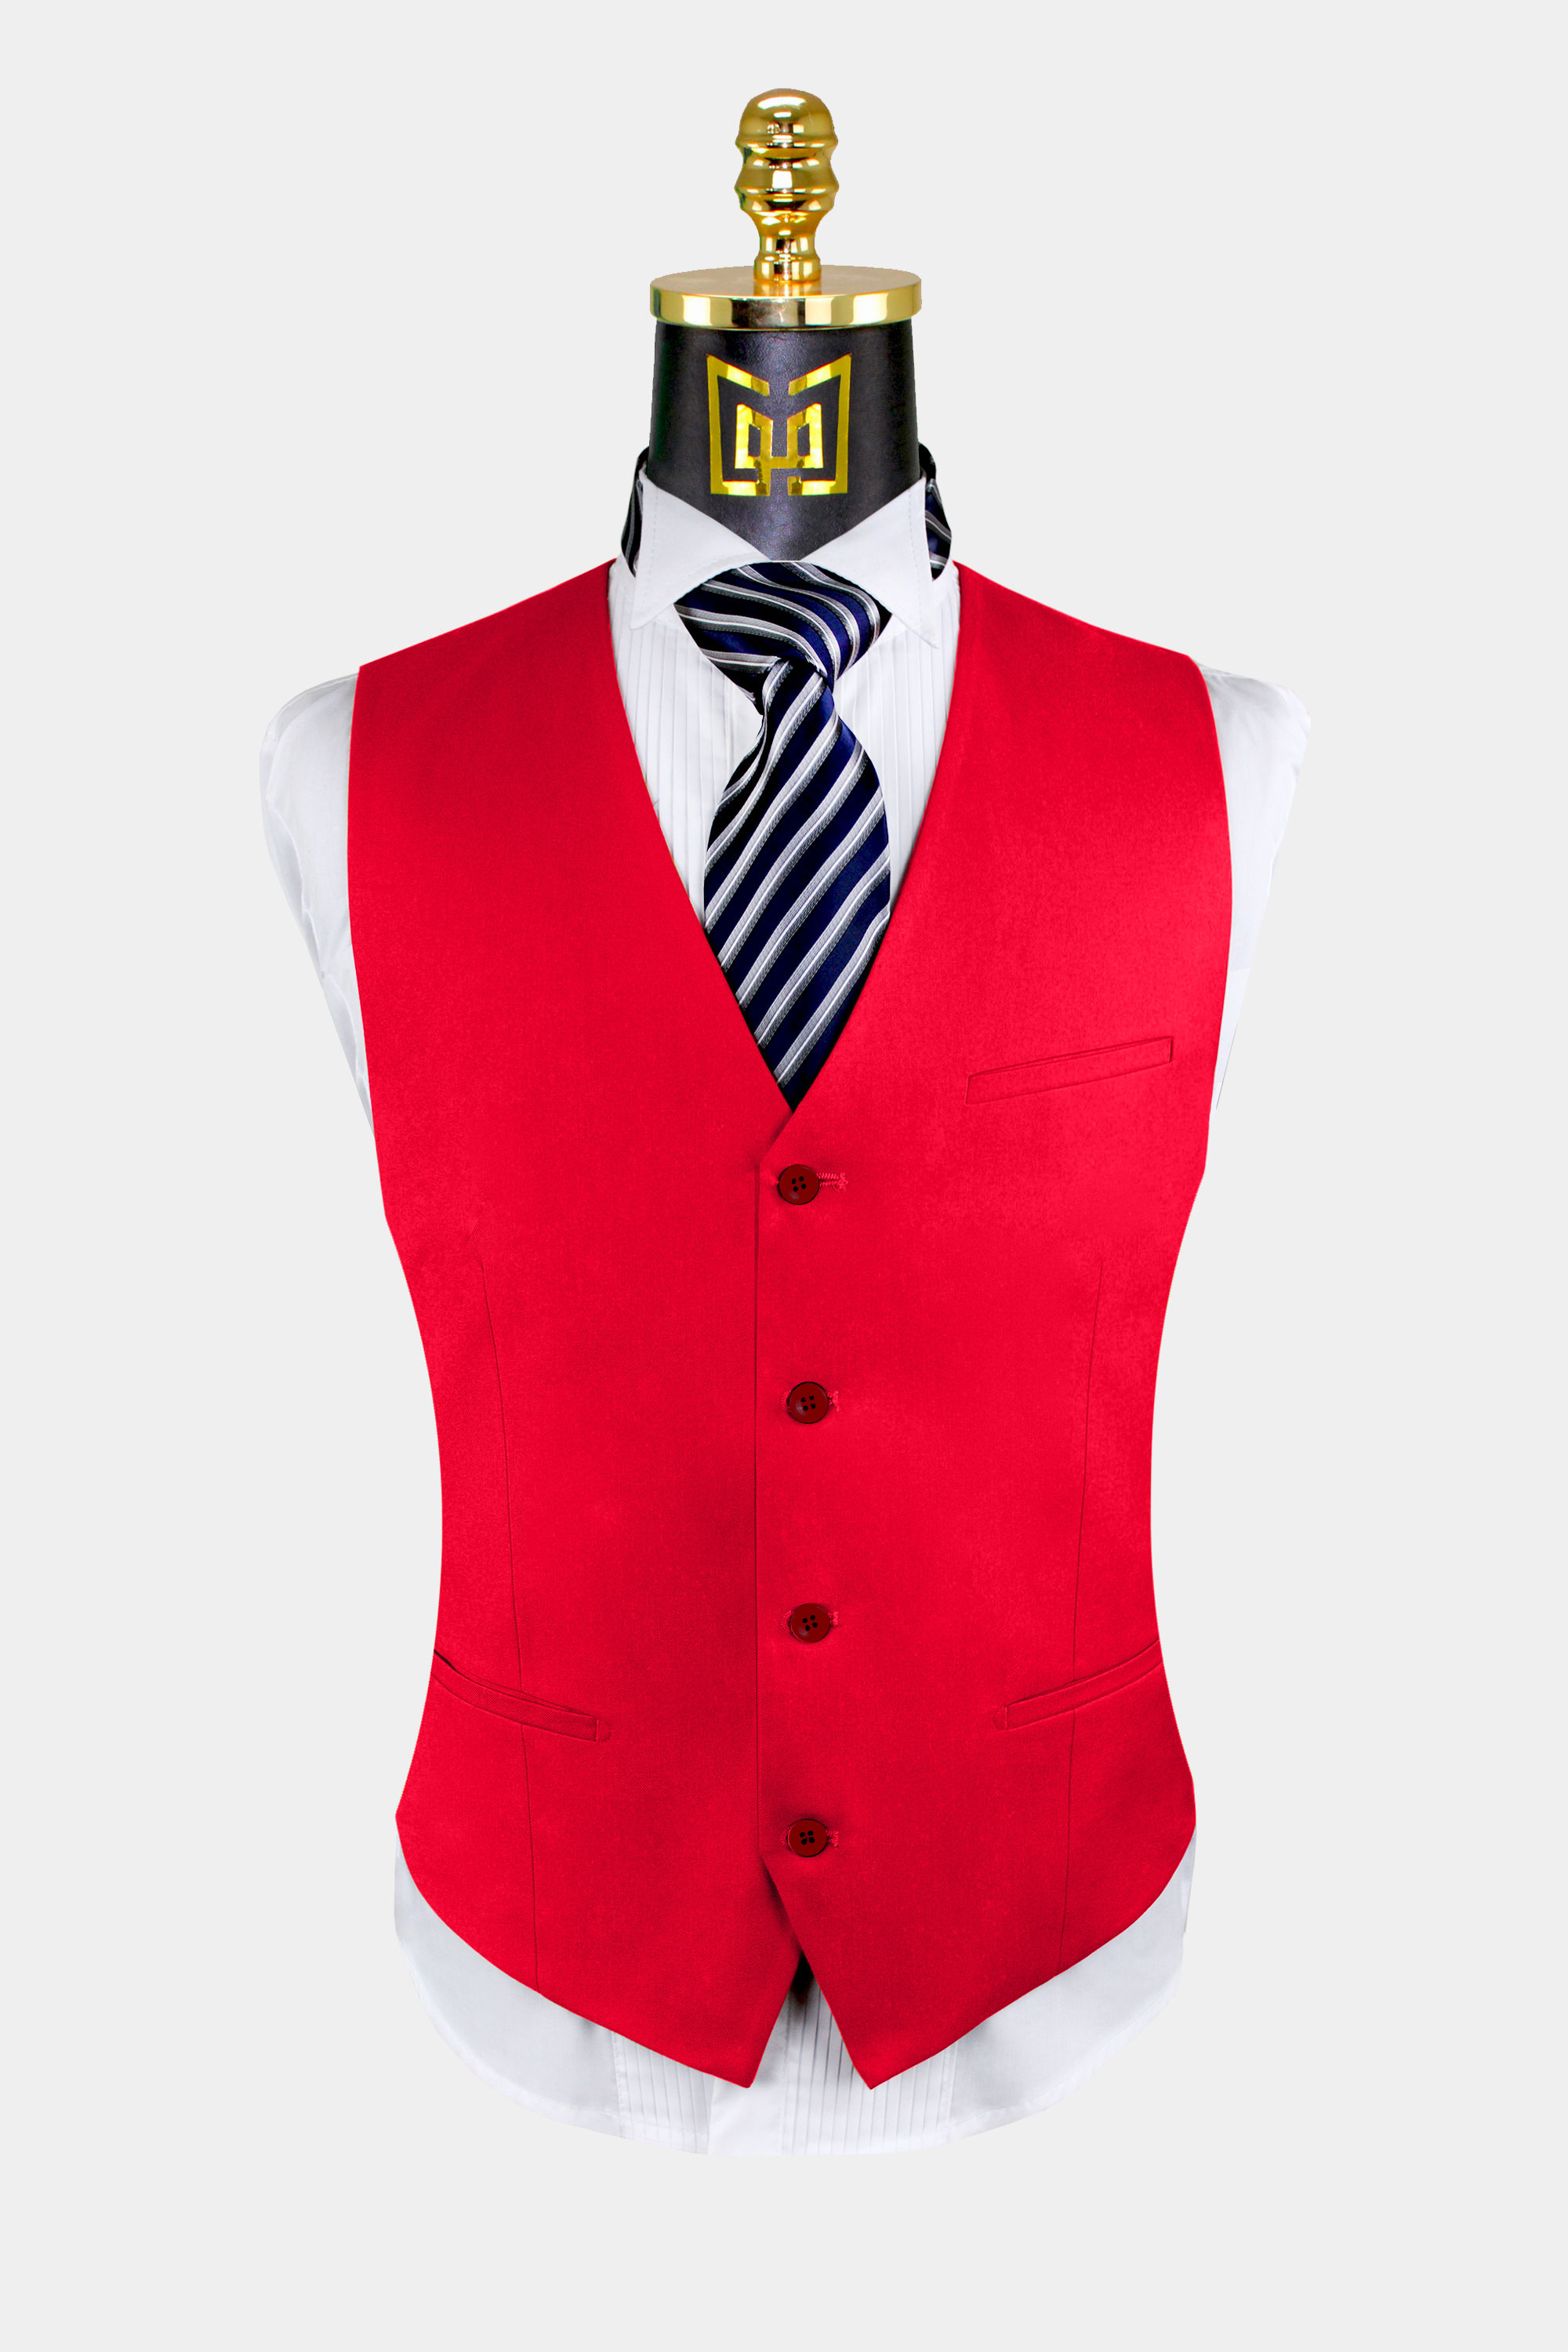 Red-Suit-Vest-from-Gentlemansguru.com.jpg